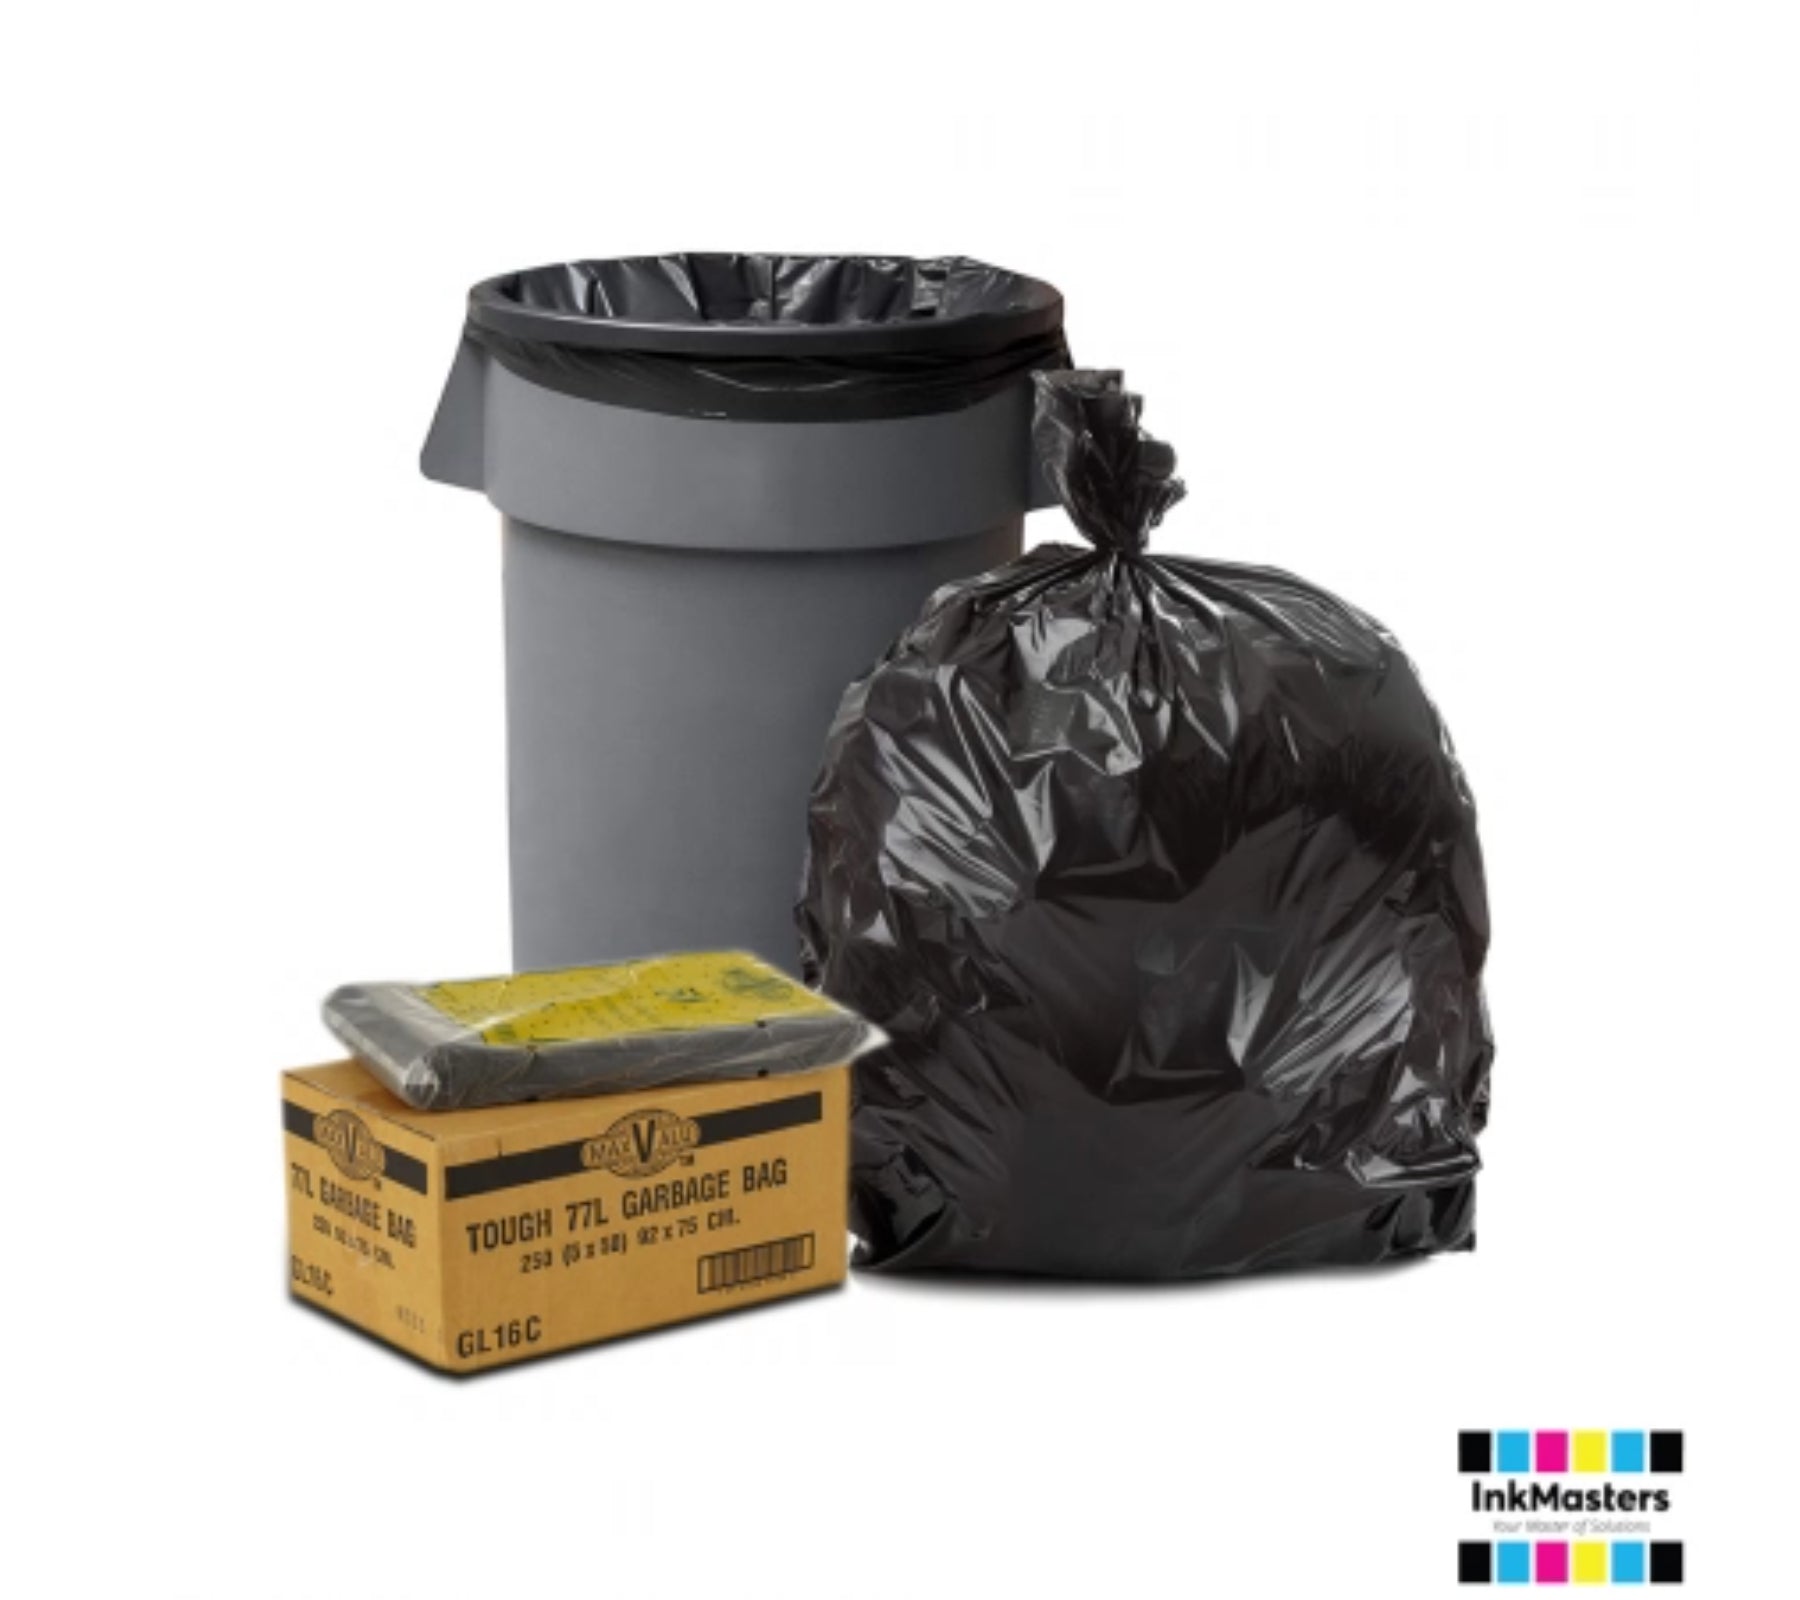 Global Industrial™ Heavy Duty Black Trash Bags - 12 to 16 Gal, 1.2 Mil, 250  Bags/Case